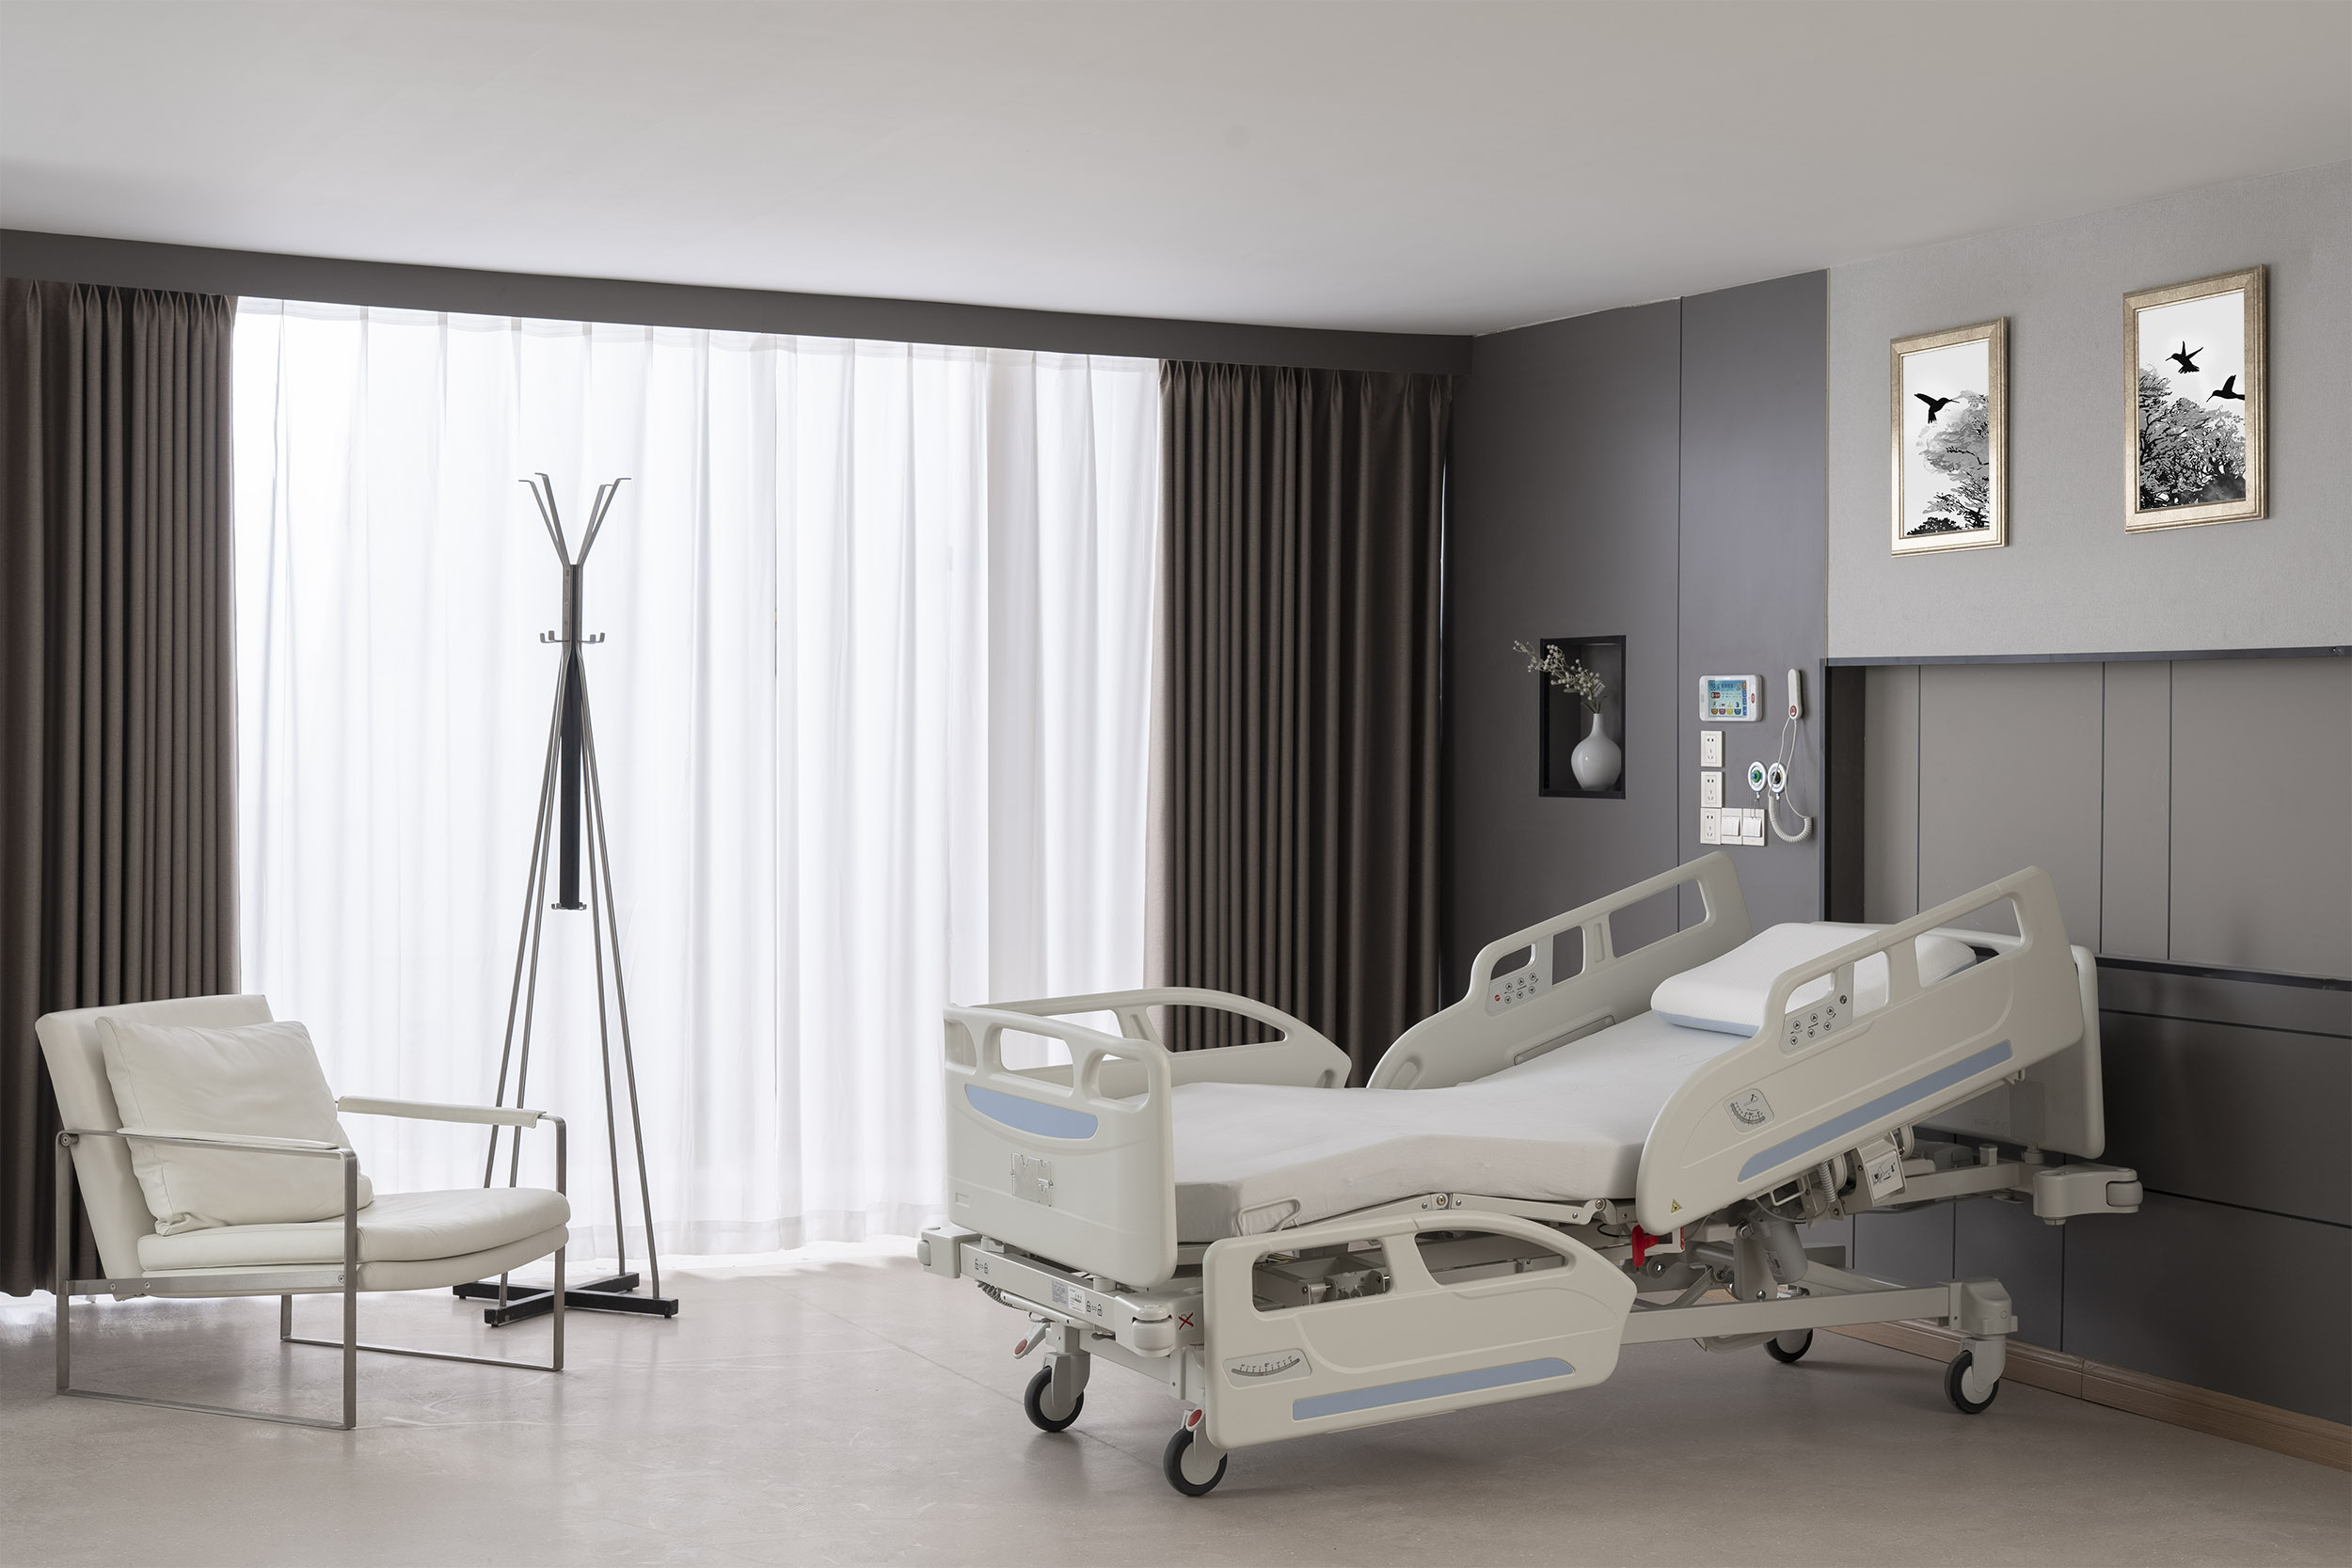 DA-2電動病床,普康醫療床,電動病床,電動護理床